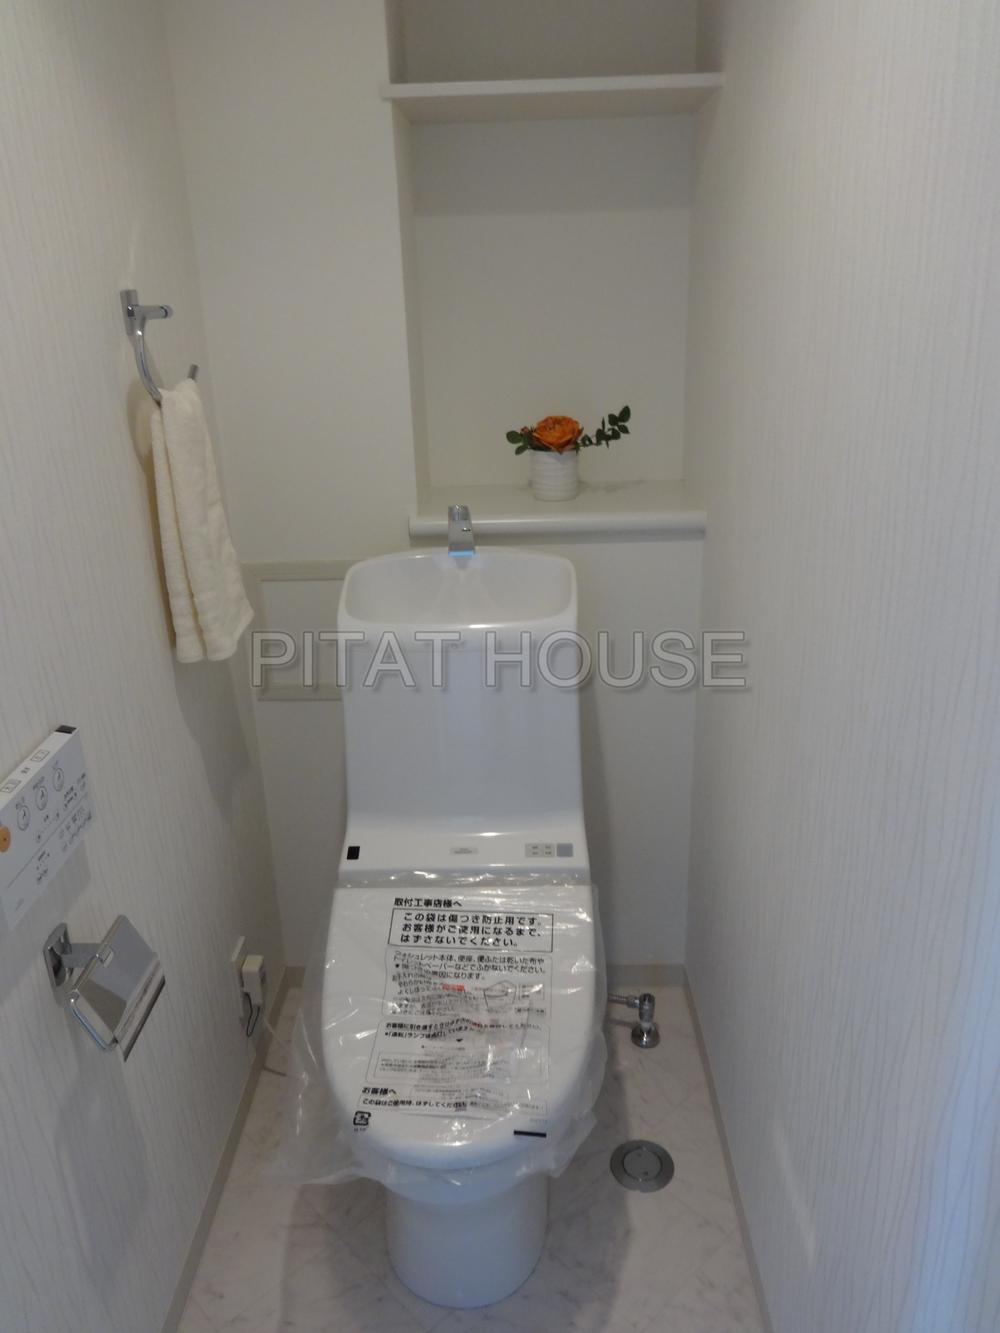 Toilet.  [toilet] Comfortable warm water washing toilet seat to the toilet